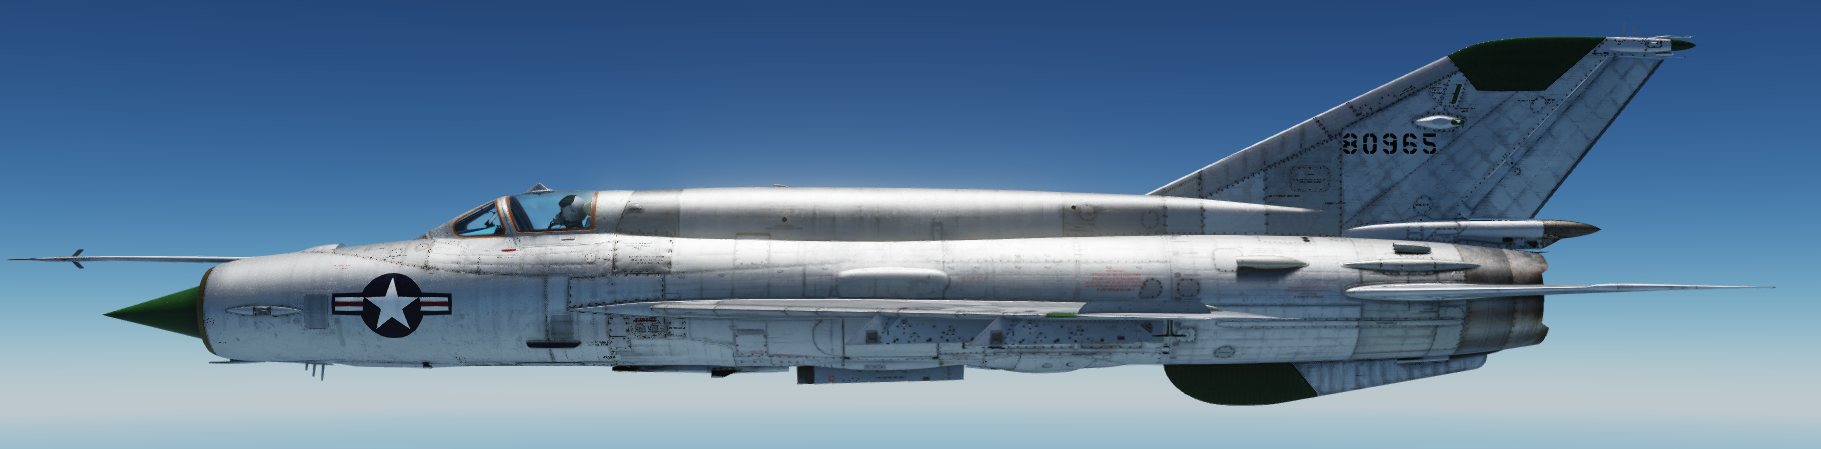 MiG-21, USAF YF-110, bn 80965 (fictional)